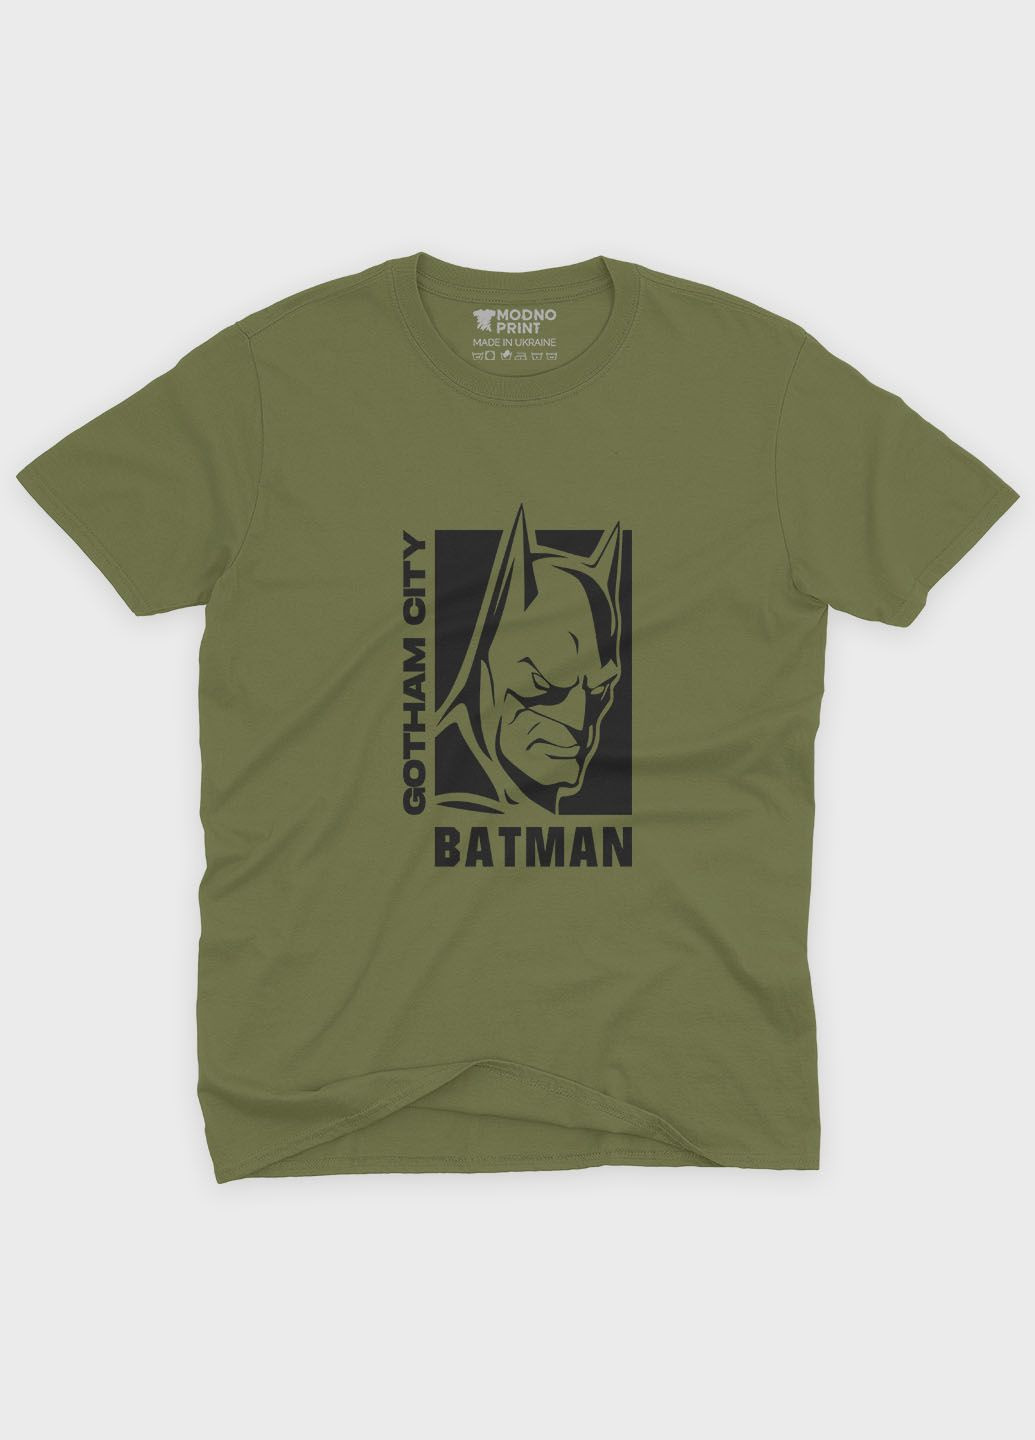 Хаки (оливковая) мужская футболка с принтом супергероя - бэтмен (ts001-1-hgr-006-003-008) Modno